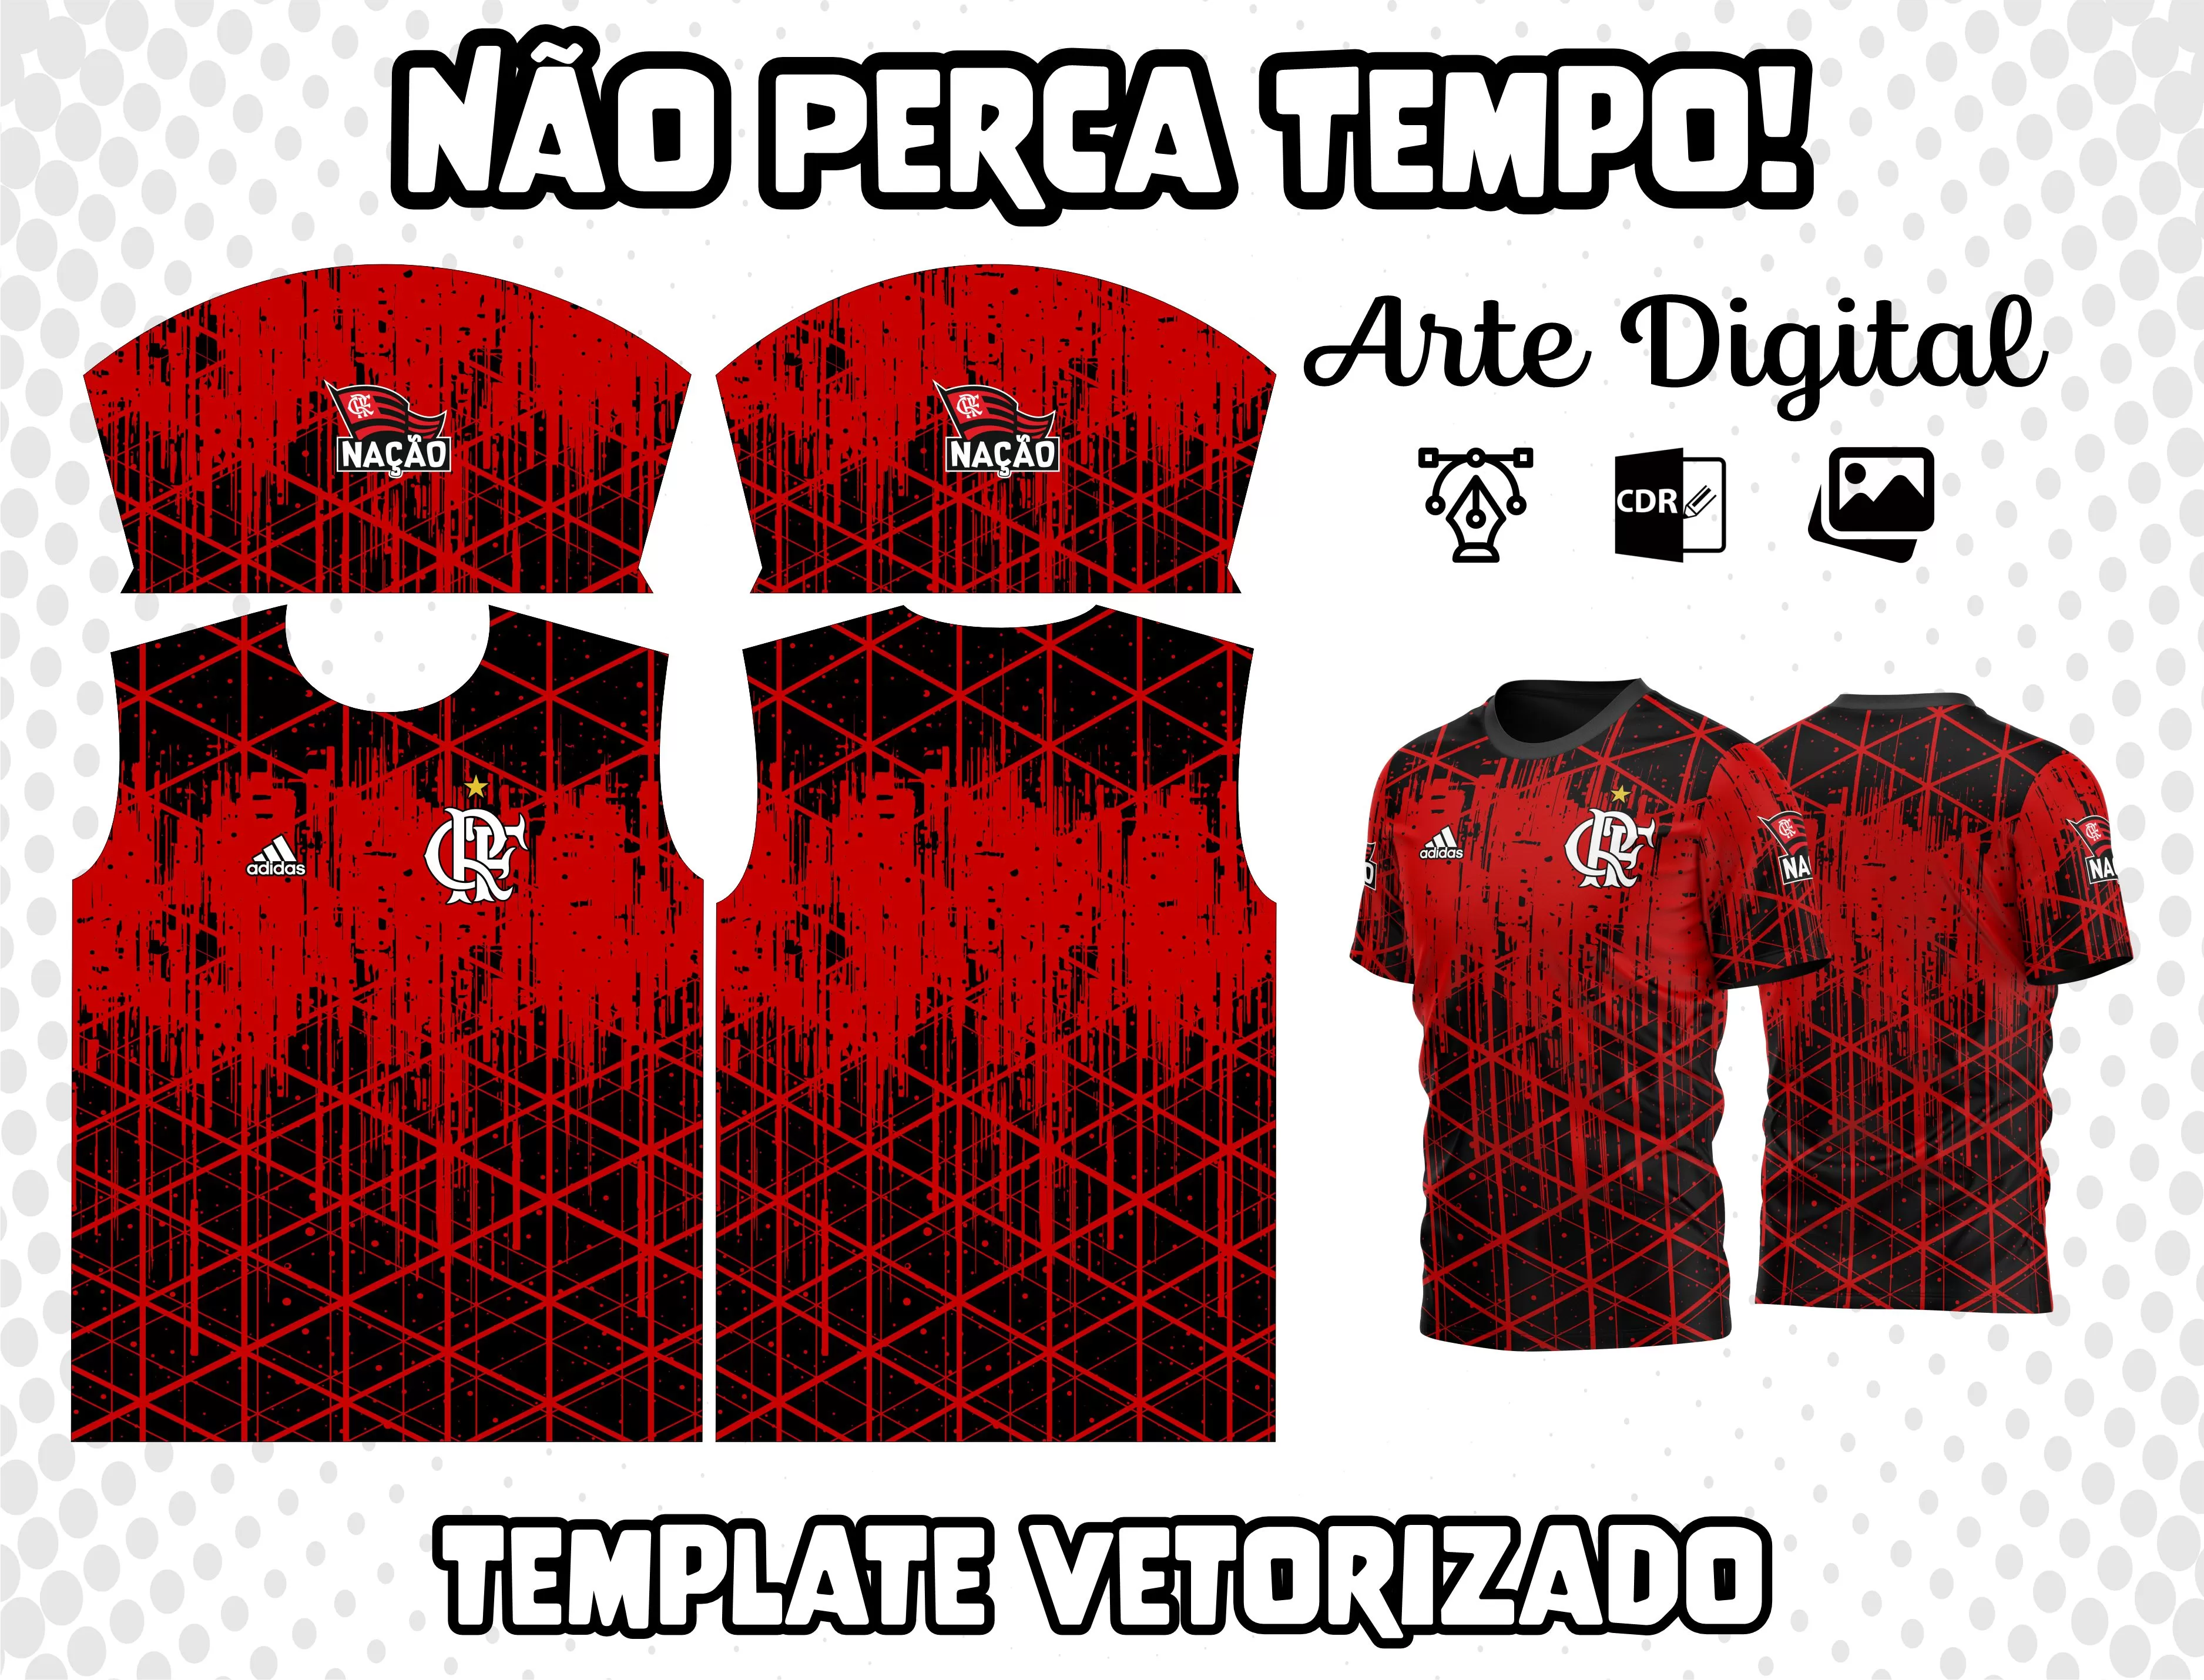 Arte Vetor Camisa do Flamengo